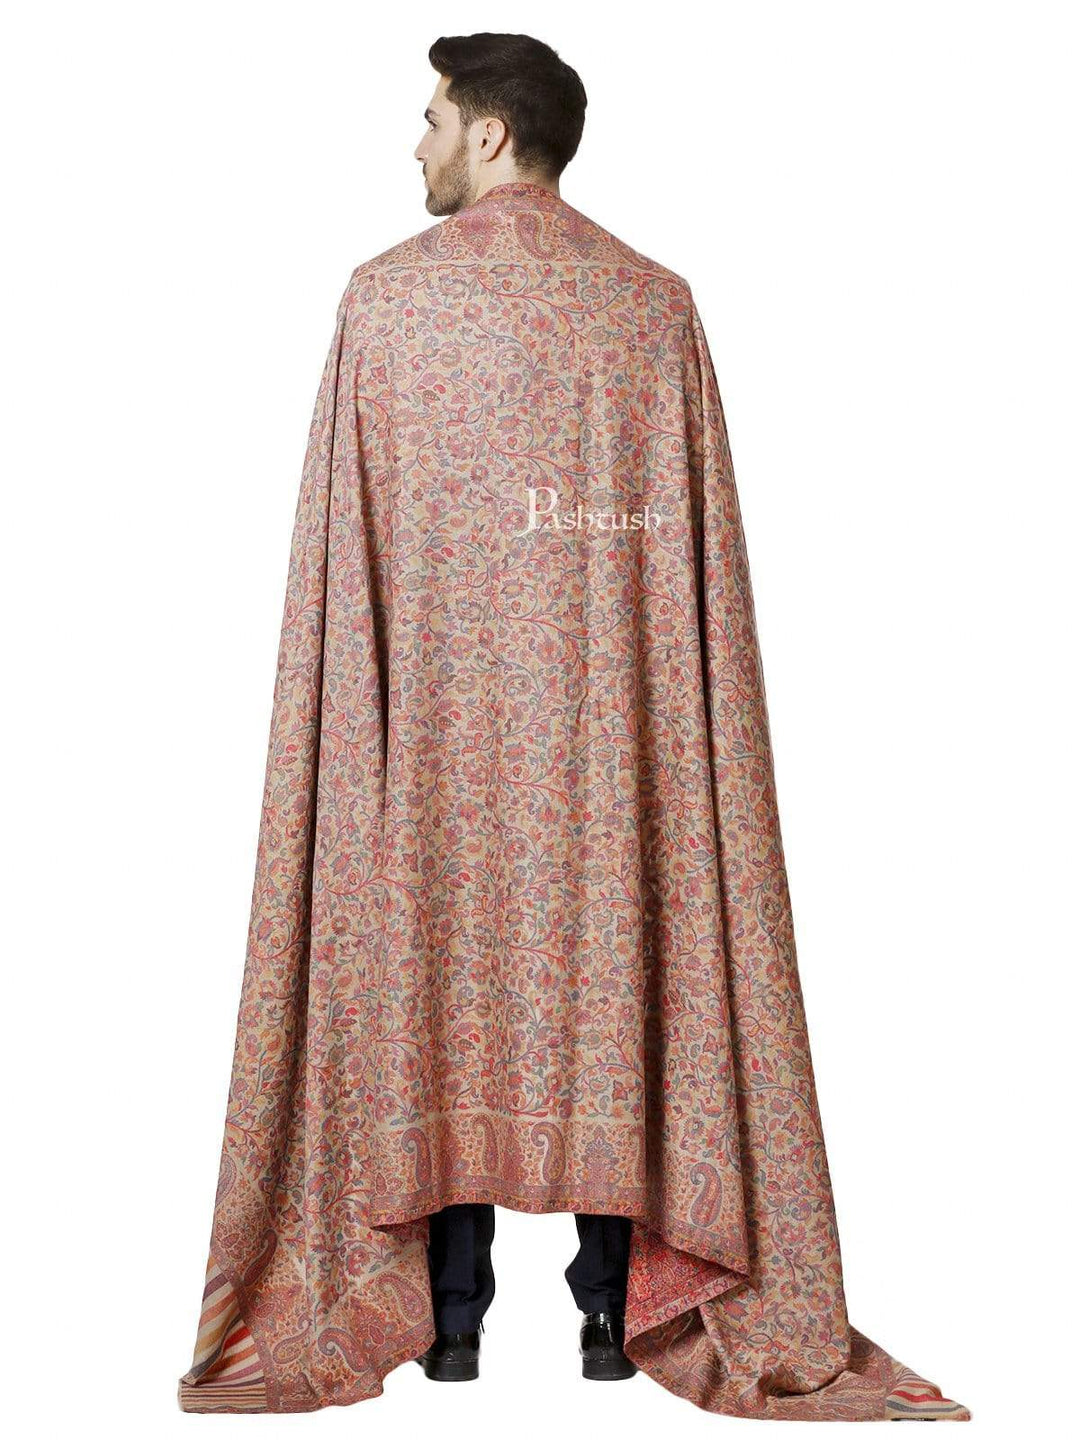 Pashtush India 127x254 Pashtush Mens Kaani Shawl, Mens Lohi, Full Size, Fine Wool, Beige